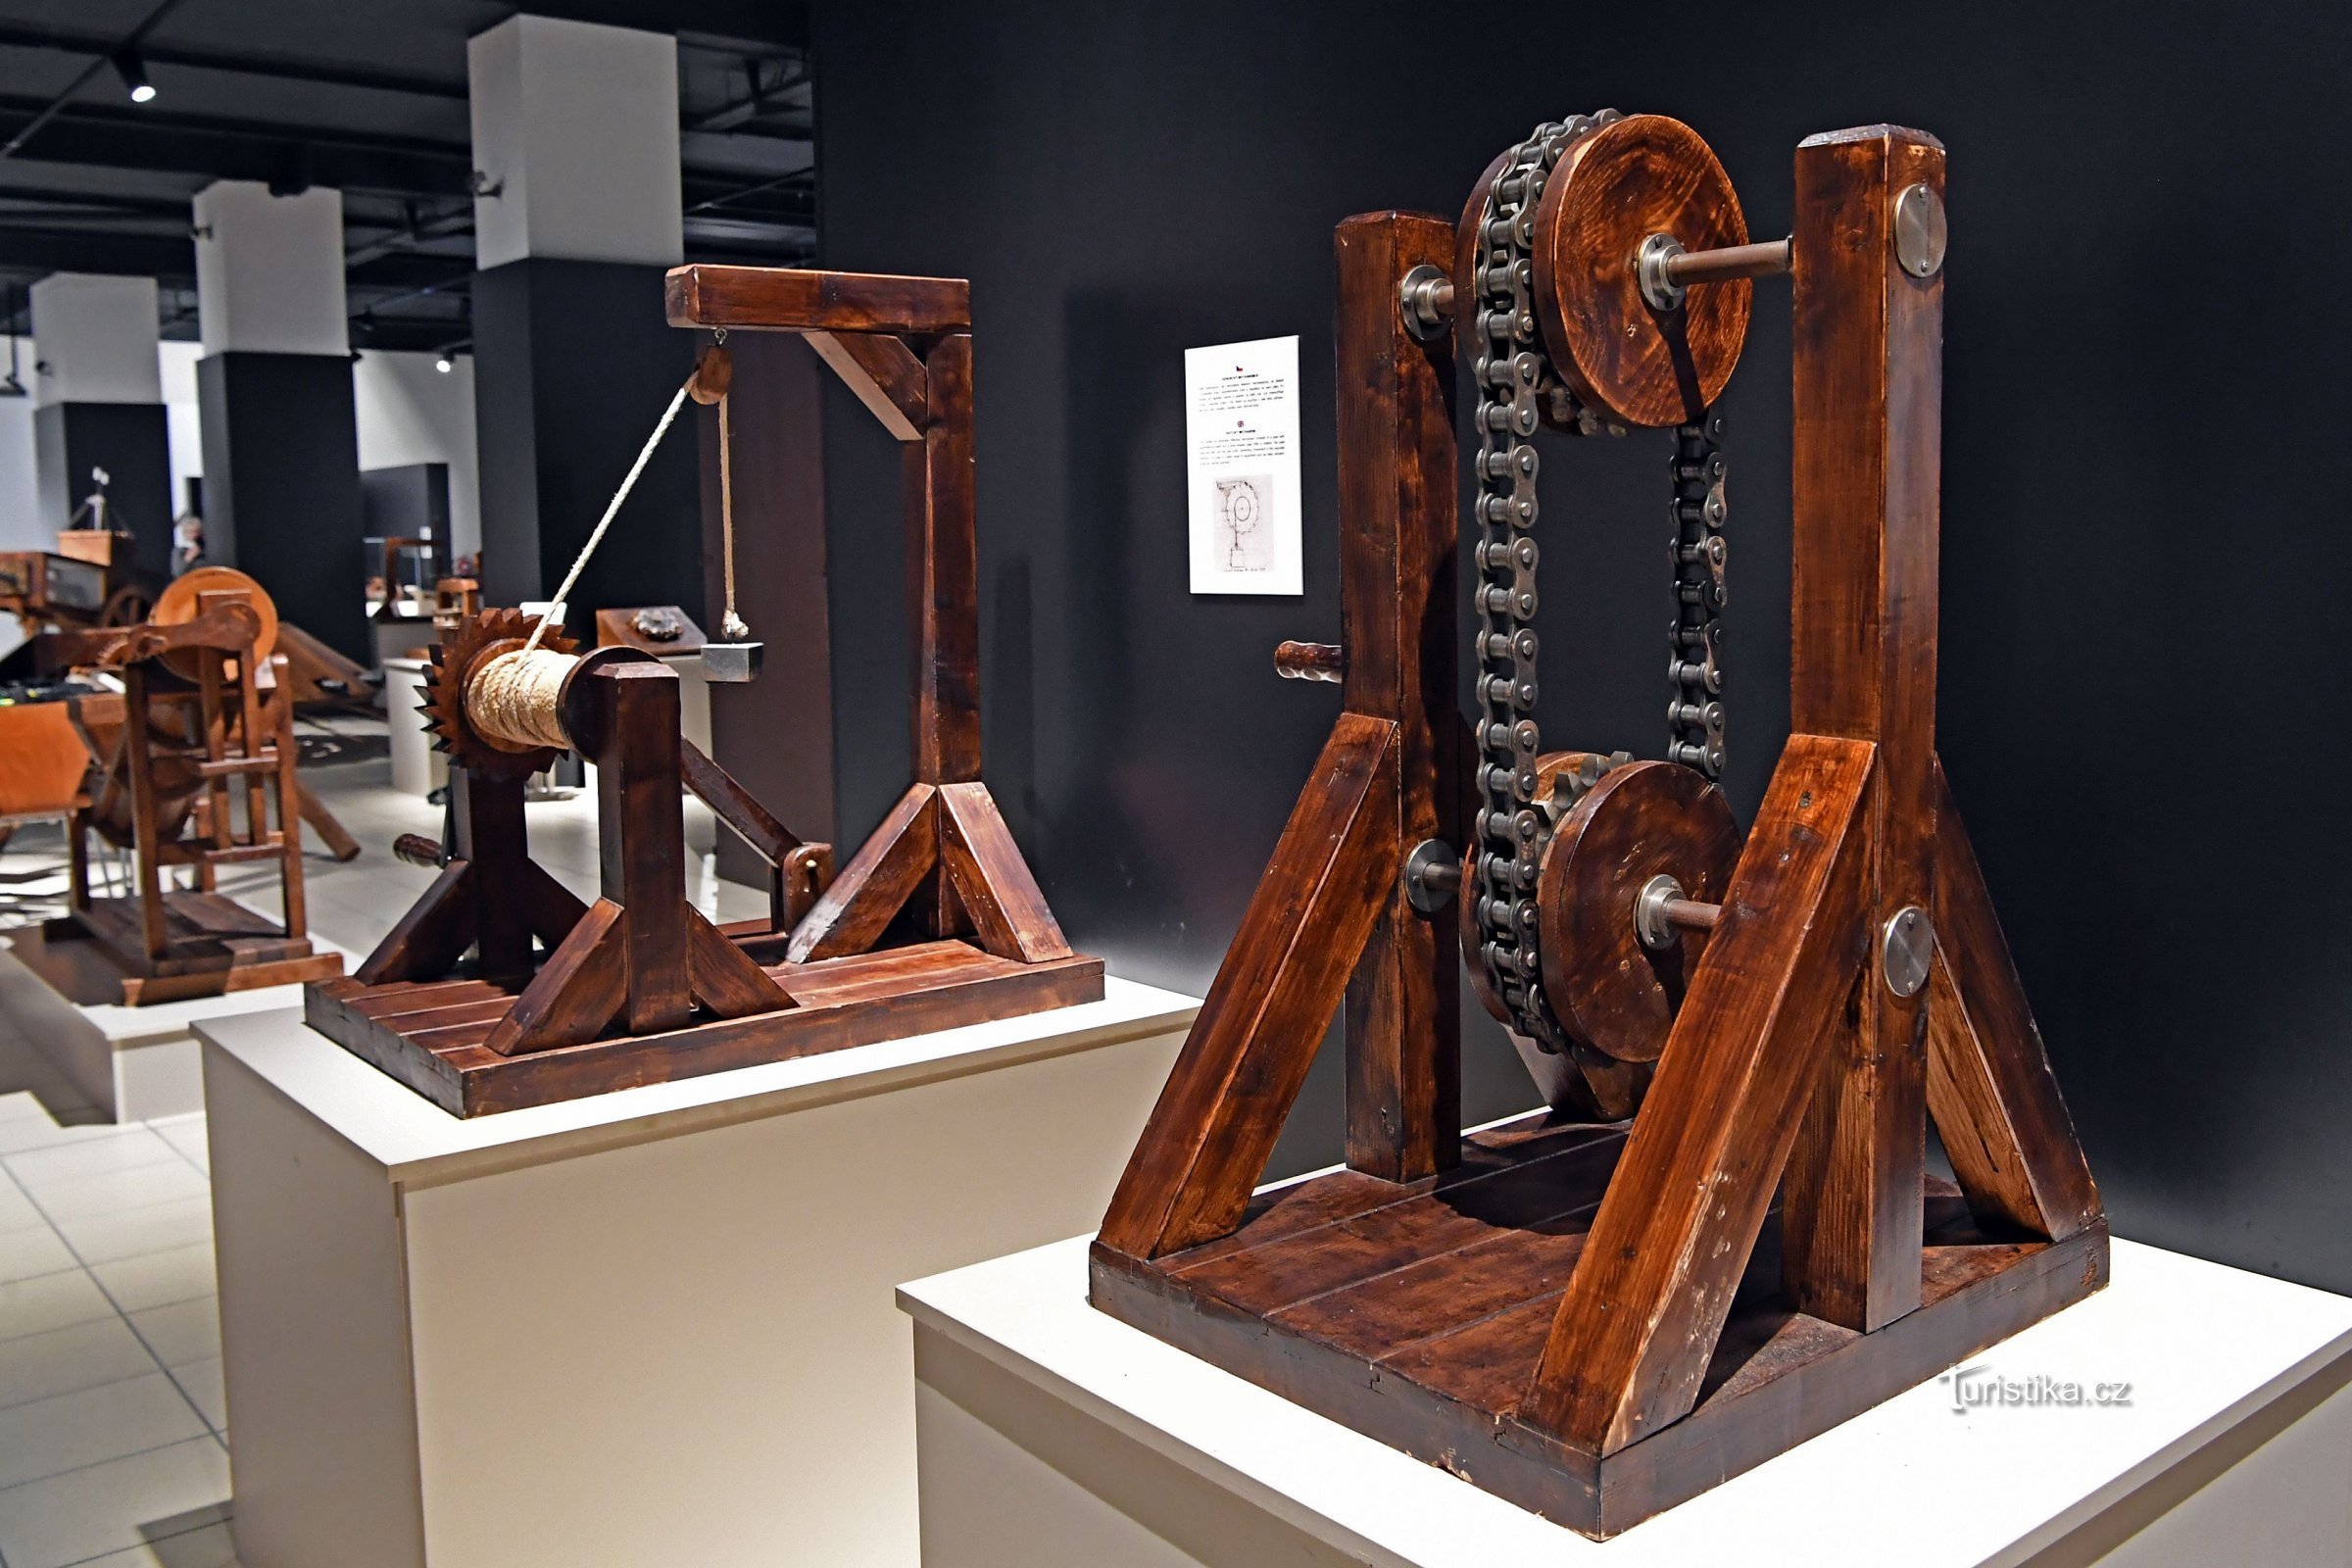 Al Museo della Tecnica di Brno per la nuova mostra della Macchina Leonardo da Vinci